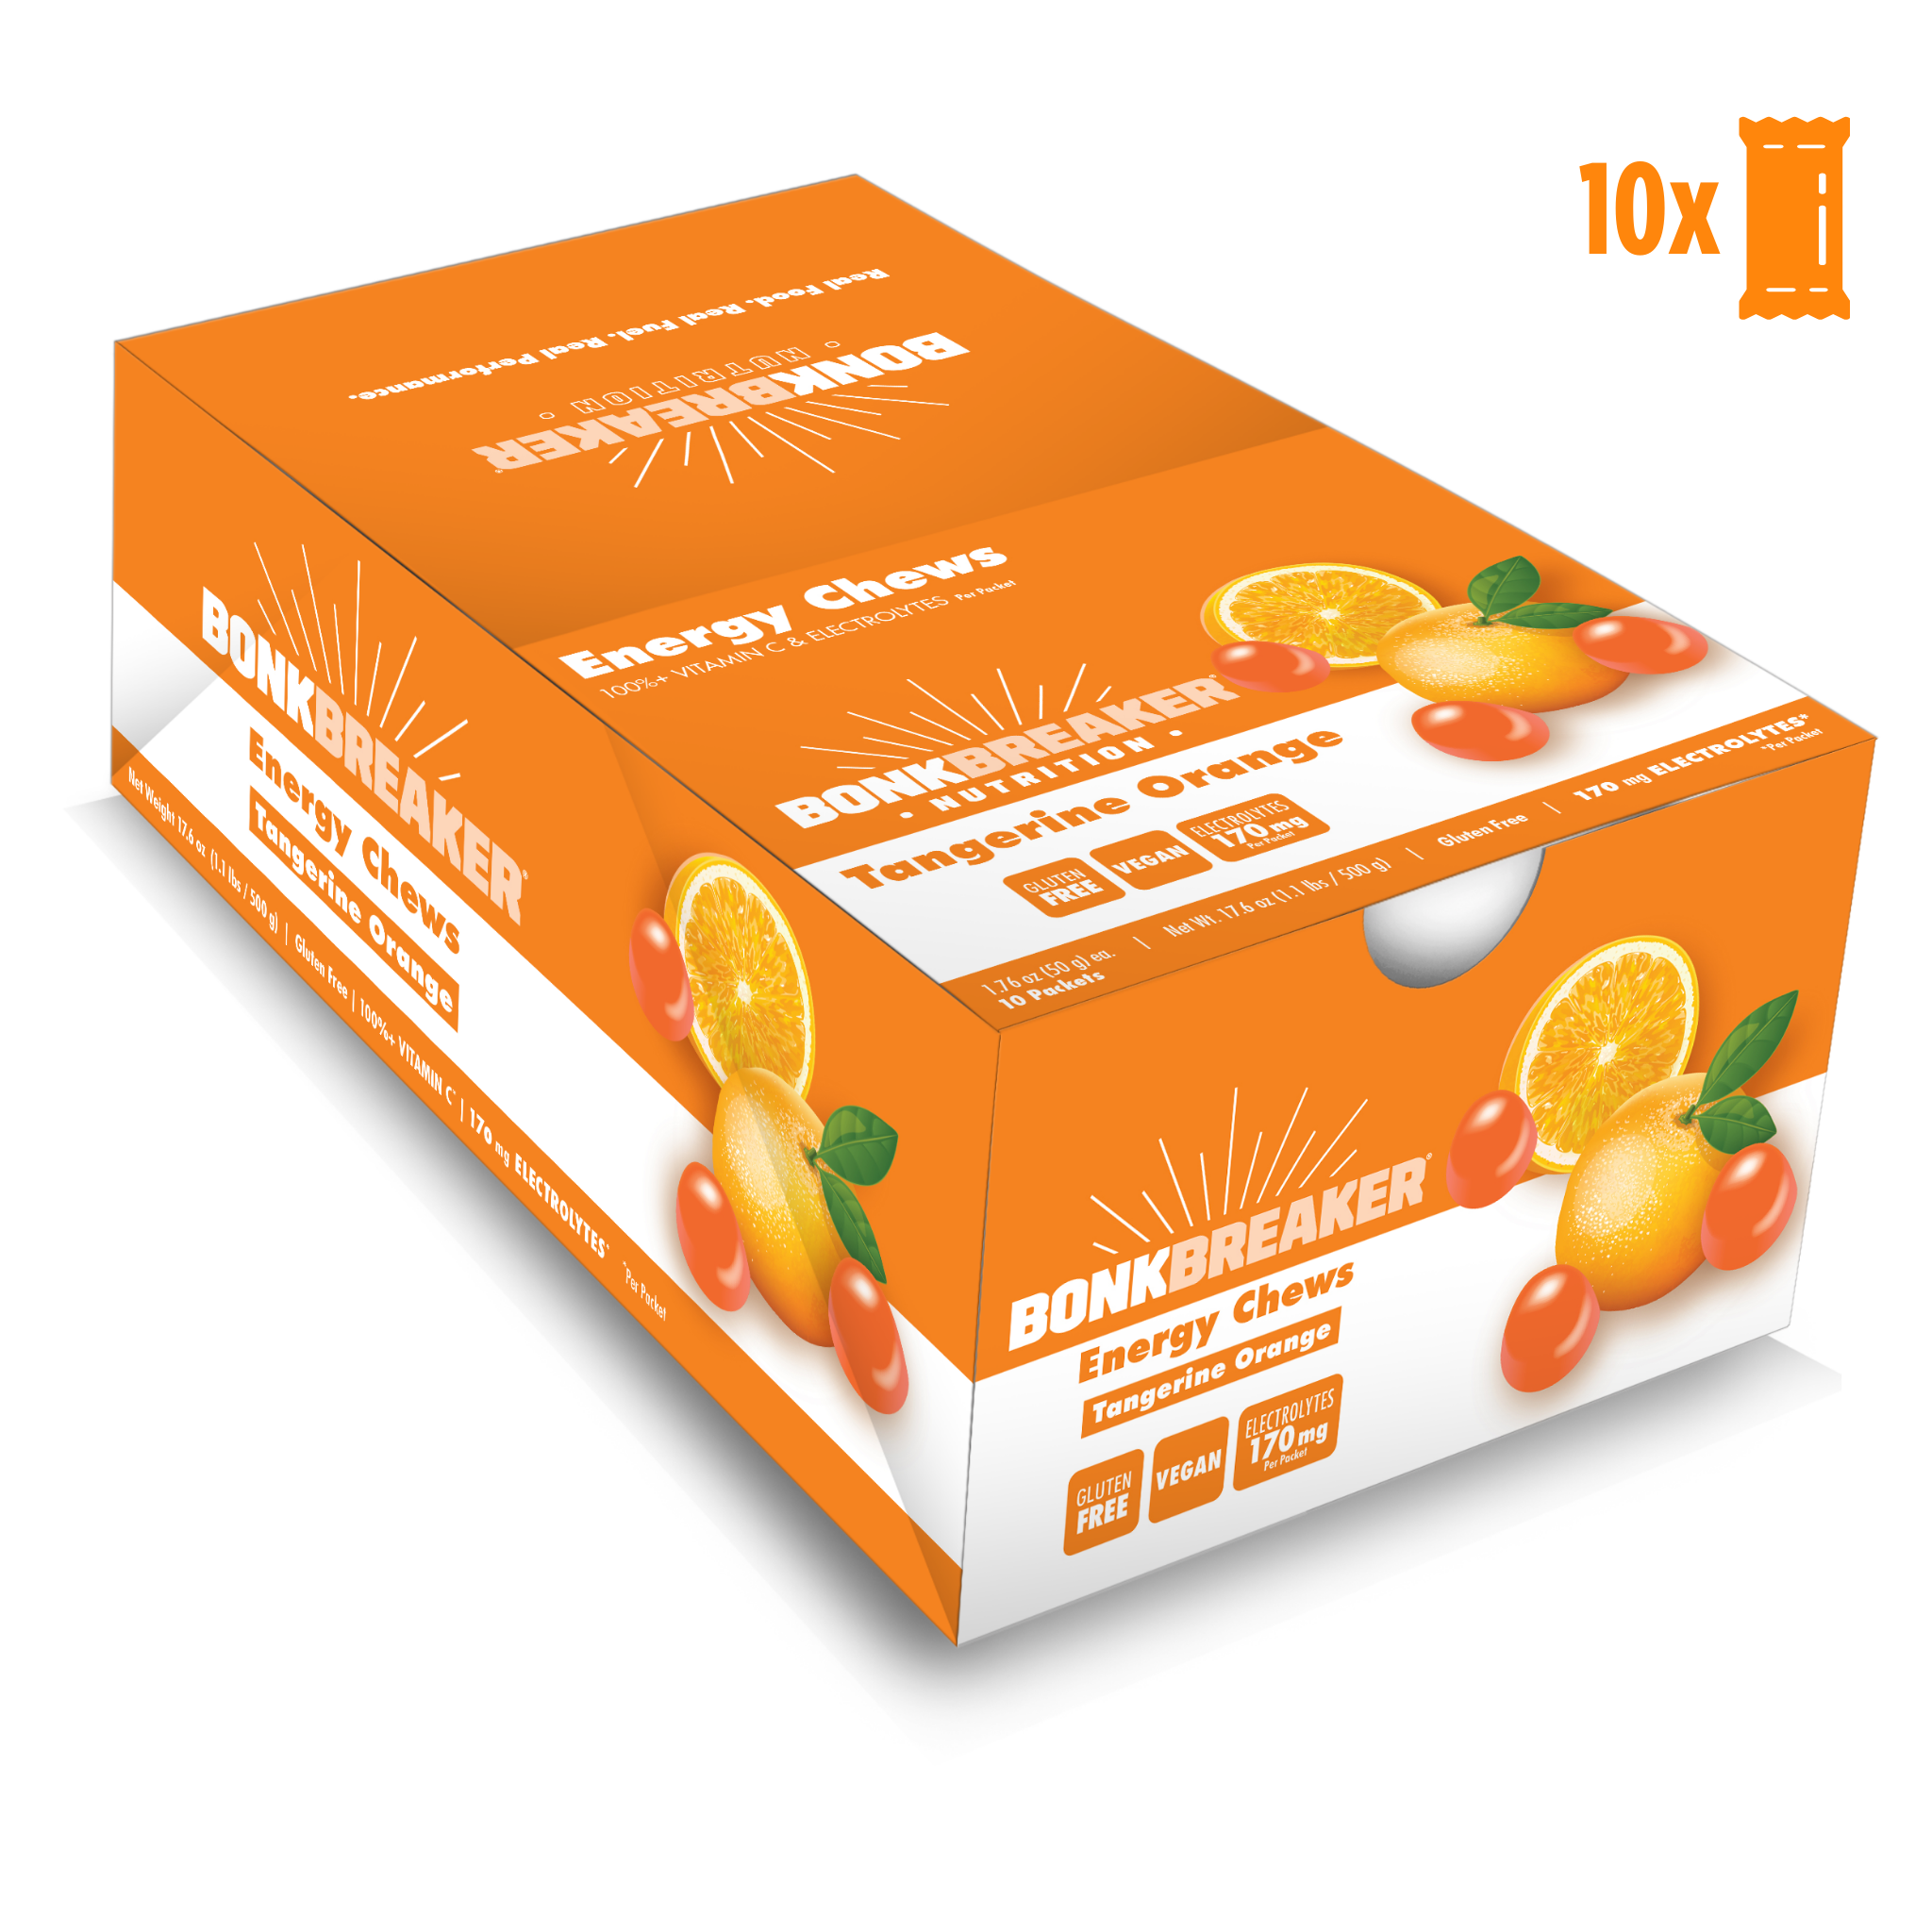 Bonk Breaker Energy chew Tangerine Orange (10 x50g) DATOVARE